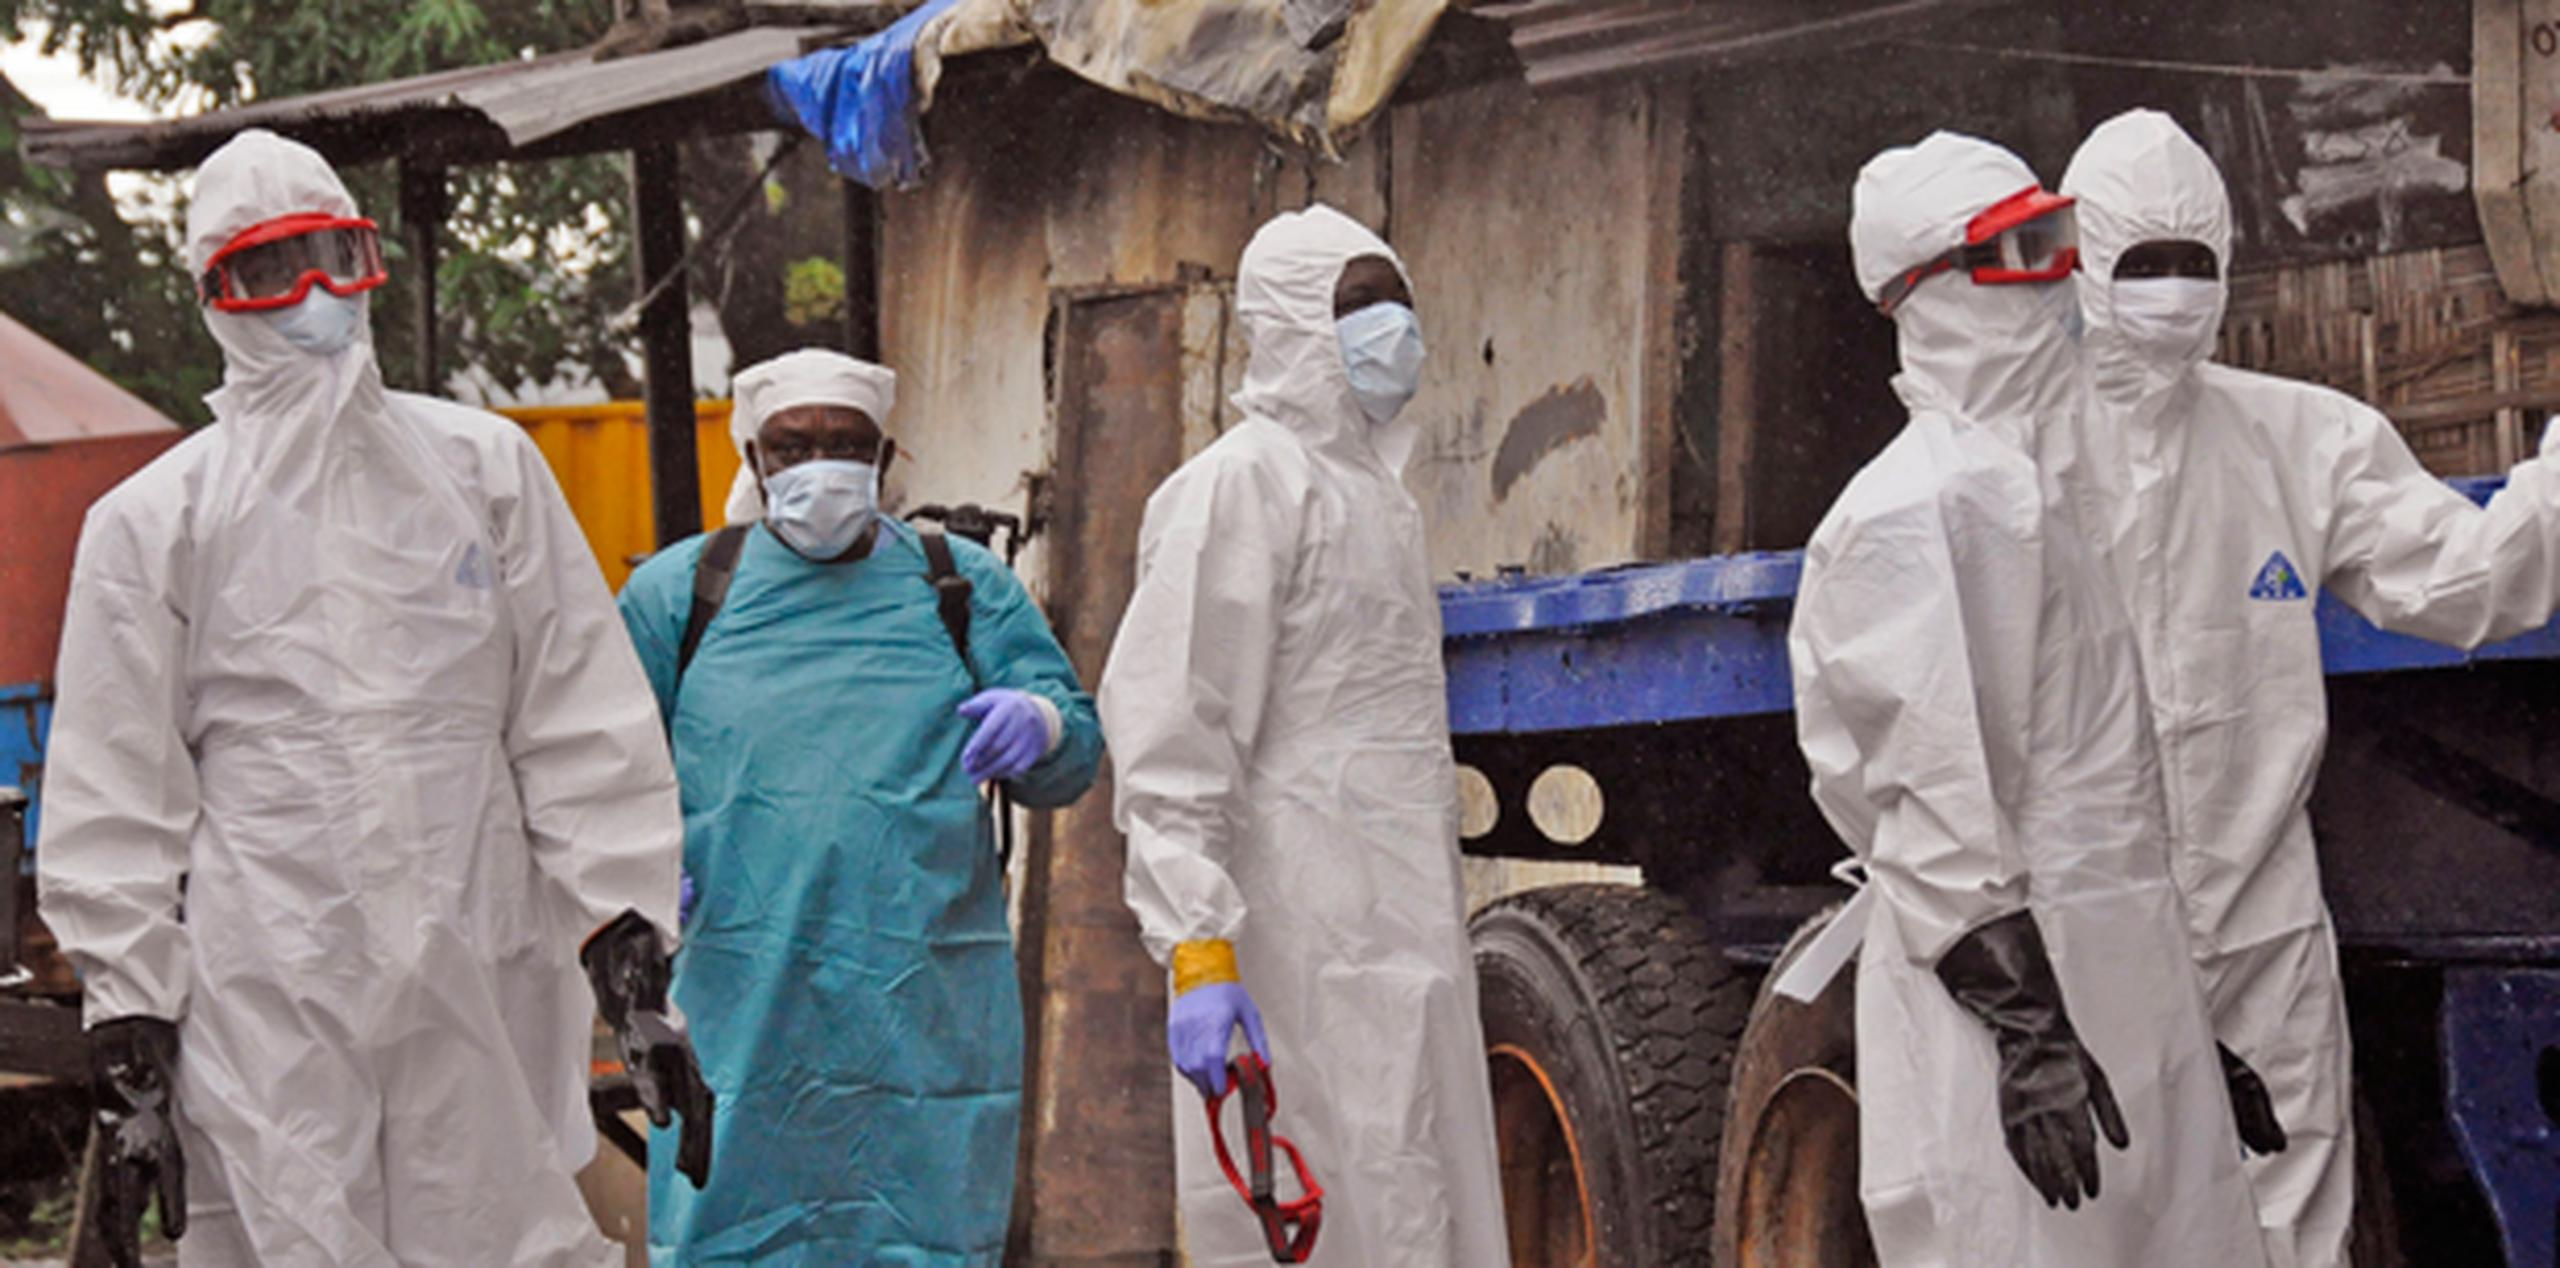 El ébola ha matado a más de 1,500 personas este año y la Organización Mundial de la Salud dijo que los casos podrían aumentar hasta 20,000 antes de que se controle el brote. (AP)